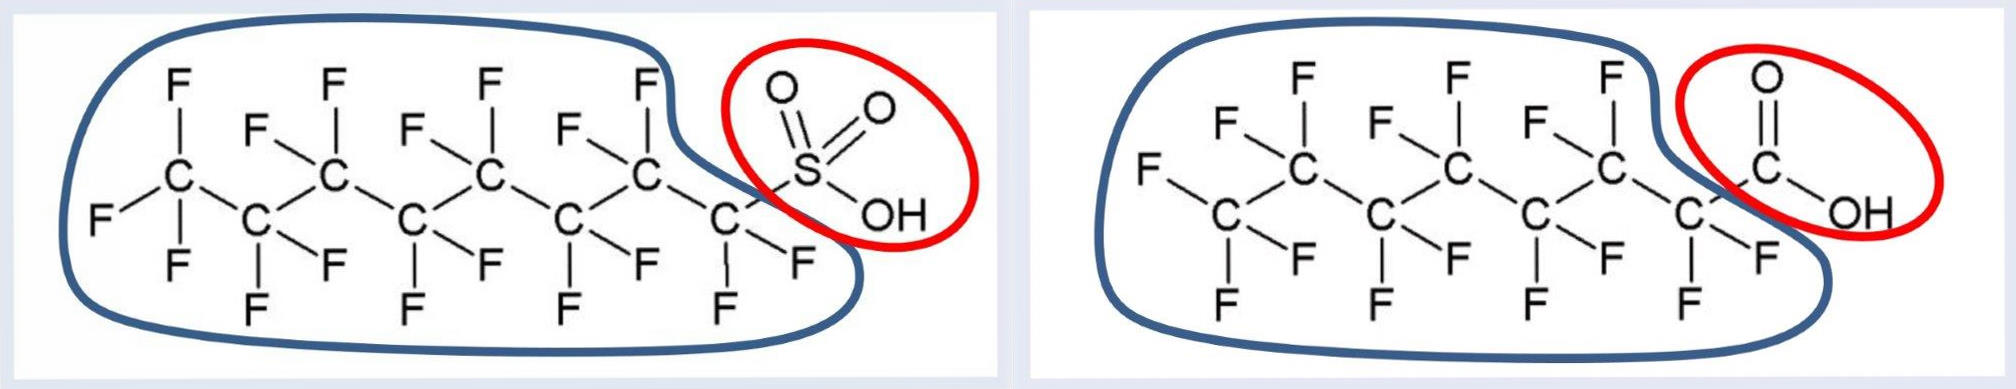 2 Abbildungen. Links: Strukturformel von PFOS. Blau markiert ist die wasser- und fettabweisende perfluorierte Kohlenstoffkette, rot markiert die negativ geladene, polare Sulfonatgruppe. Rechts: Strukturformel von PFOA. Blau markiert ist die wasser- und fettabweisende perfluorierte Kohlenstoffkette, rot markiert die polare Carbonsäuregruppe., jpg, 18.6 KB